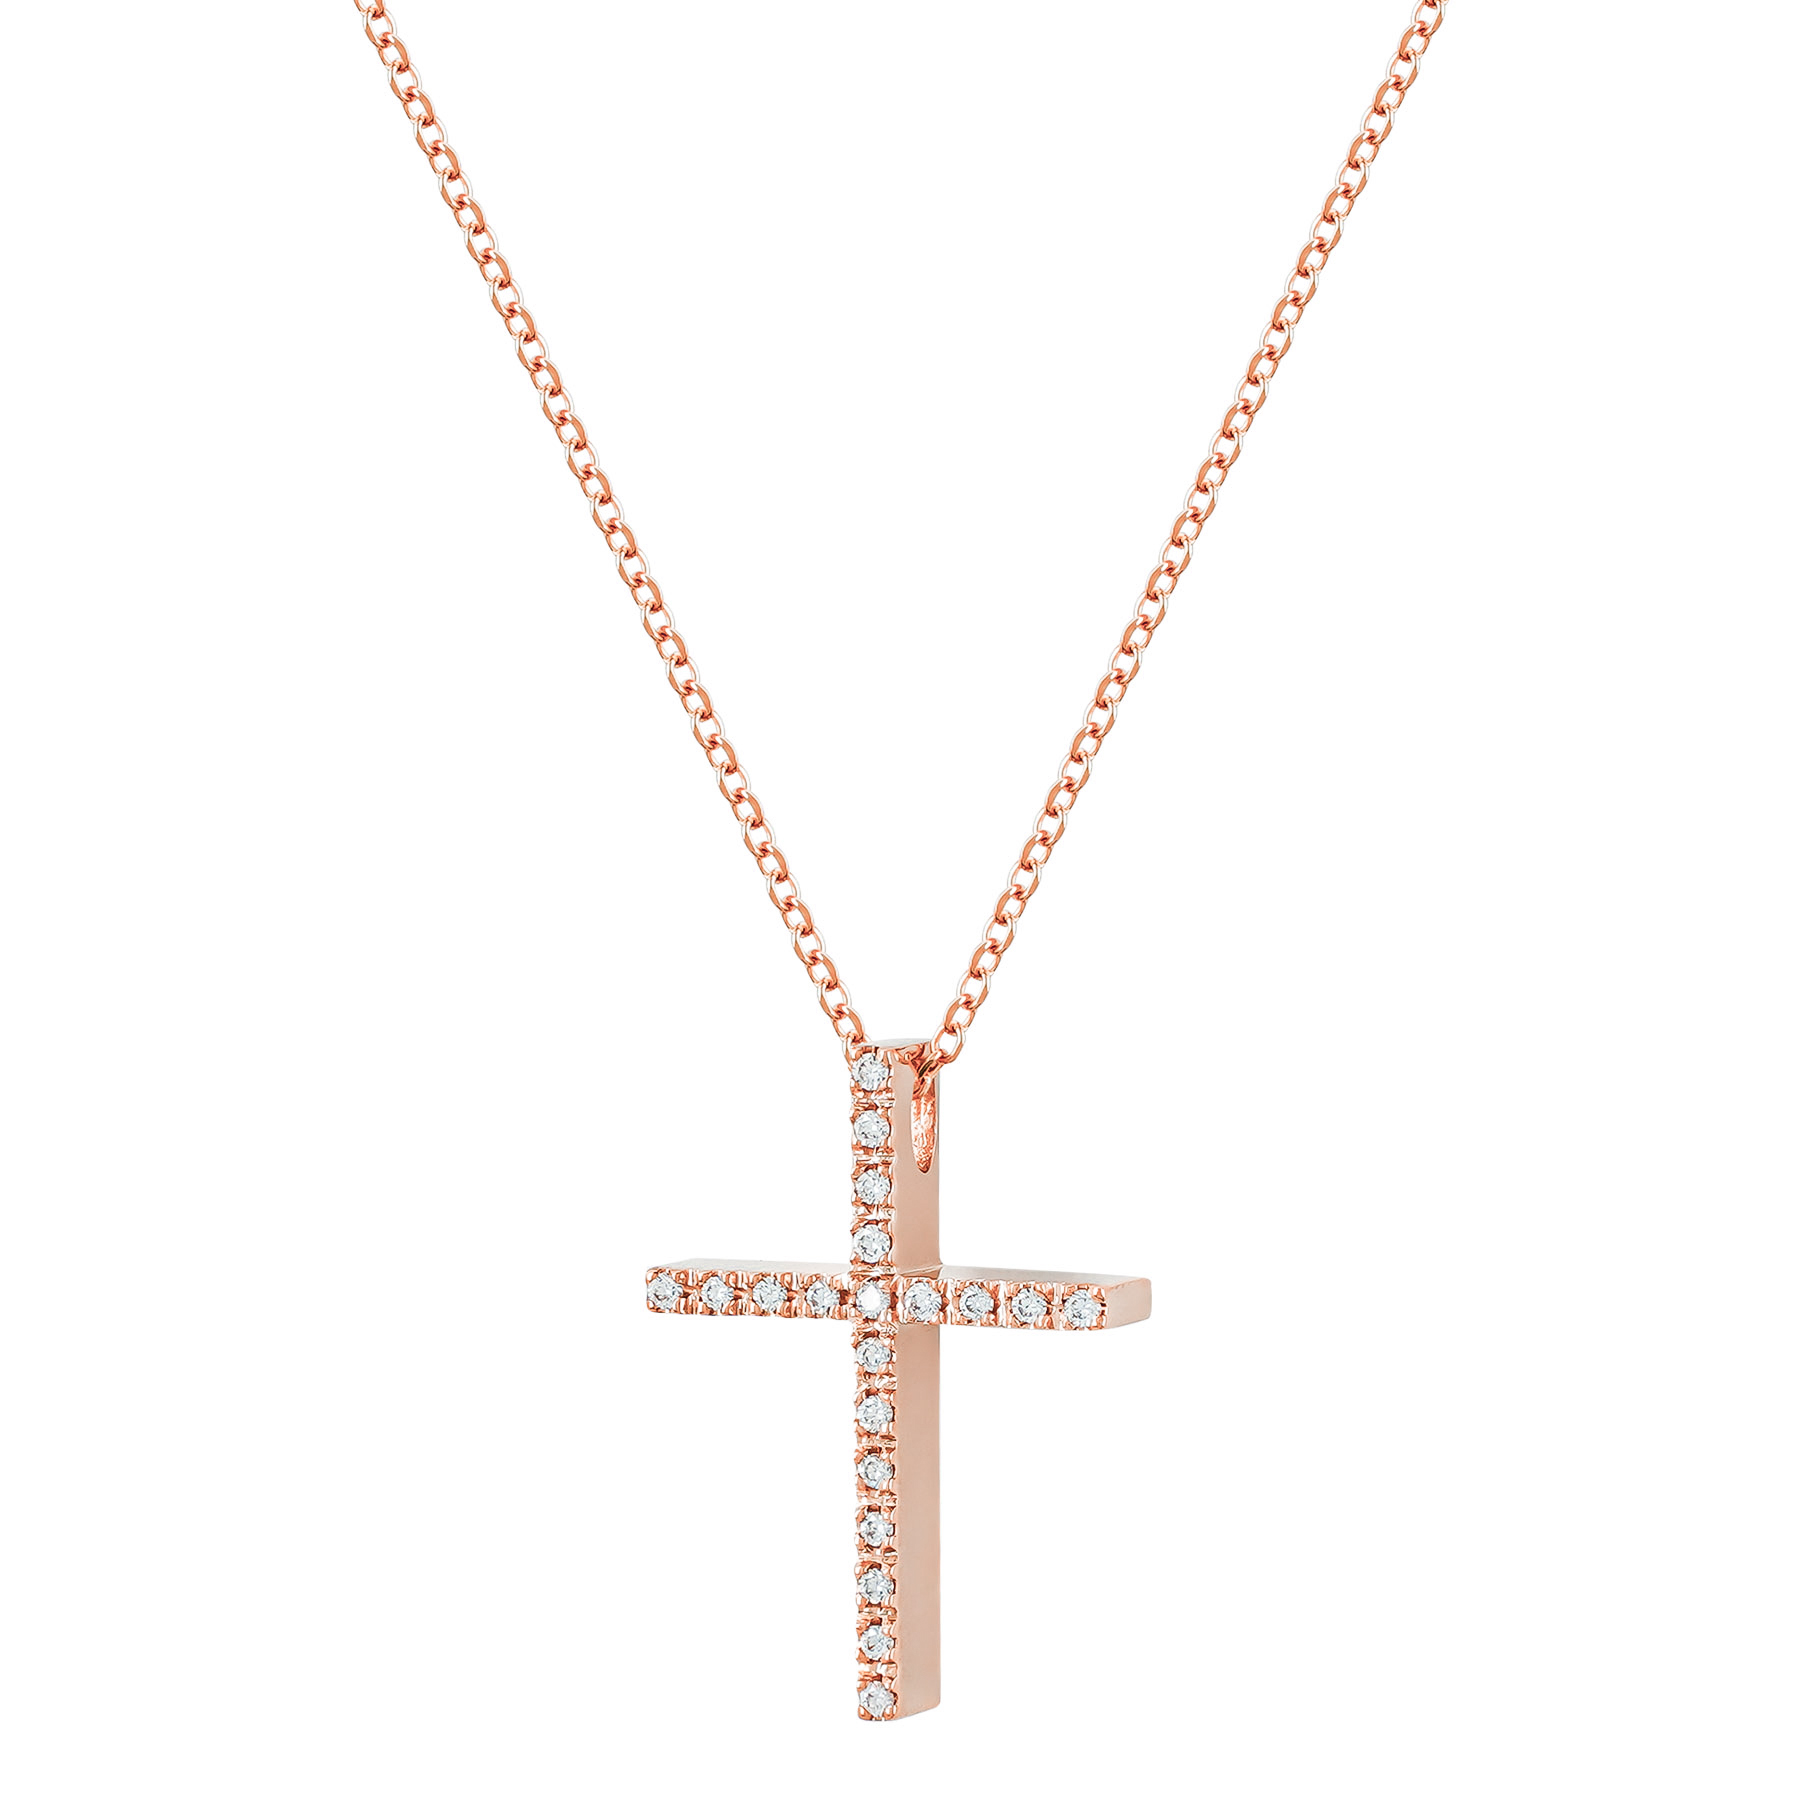 Σταυρός Βάπτισης Γυναικείος Σε Ροζ Χρυσό 18 Καρατίων Με Διαμάντια Brilliant ST3178